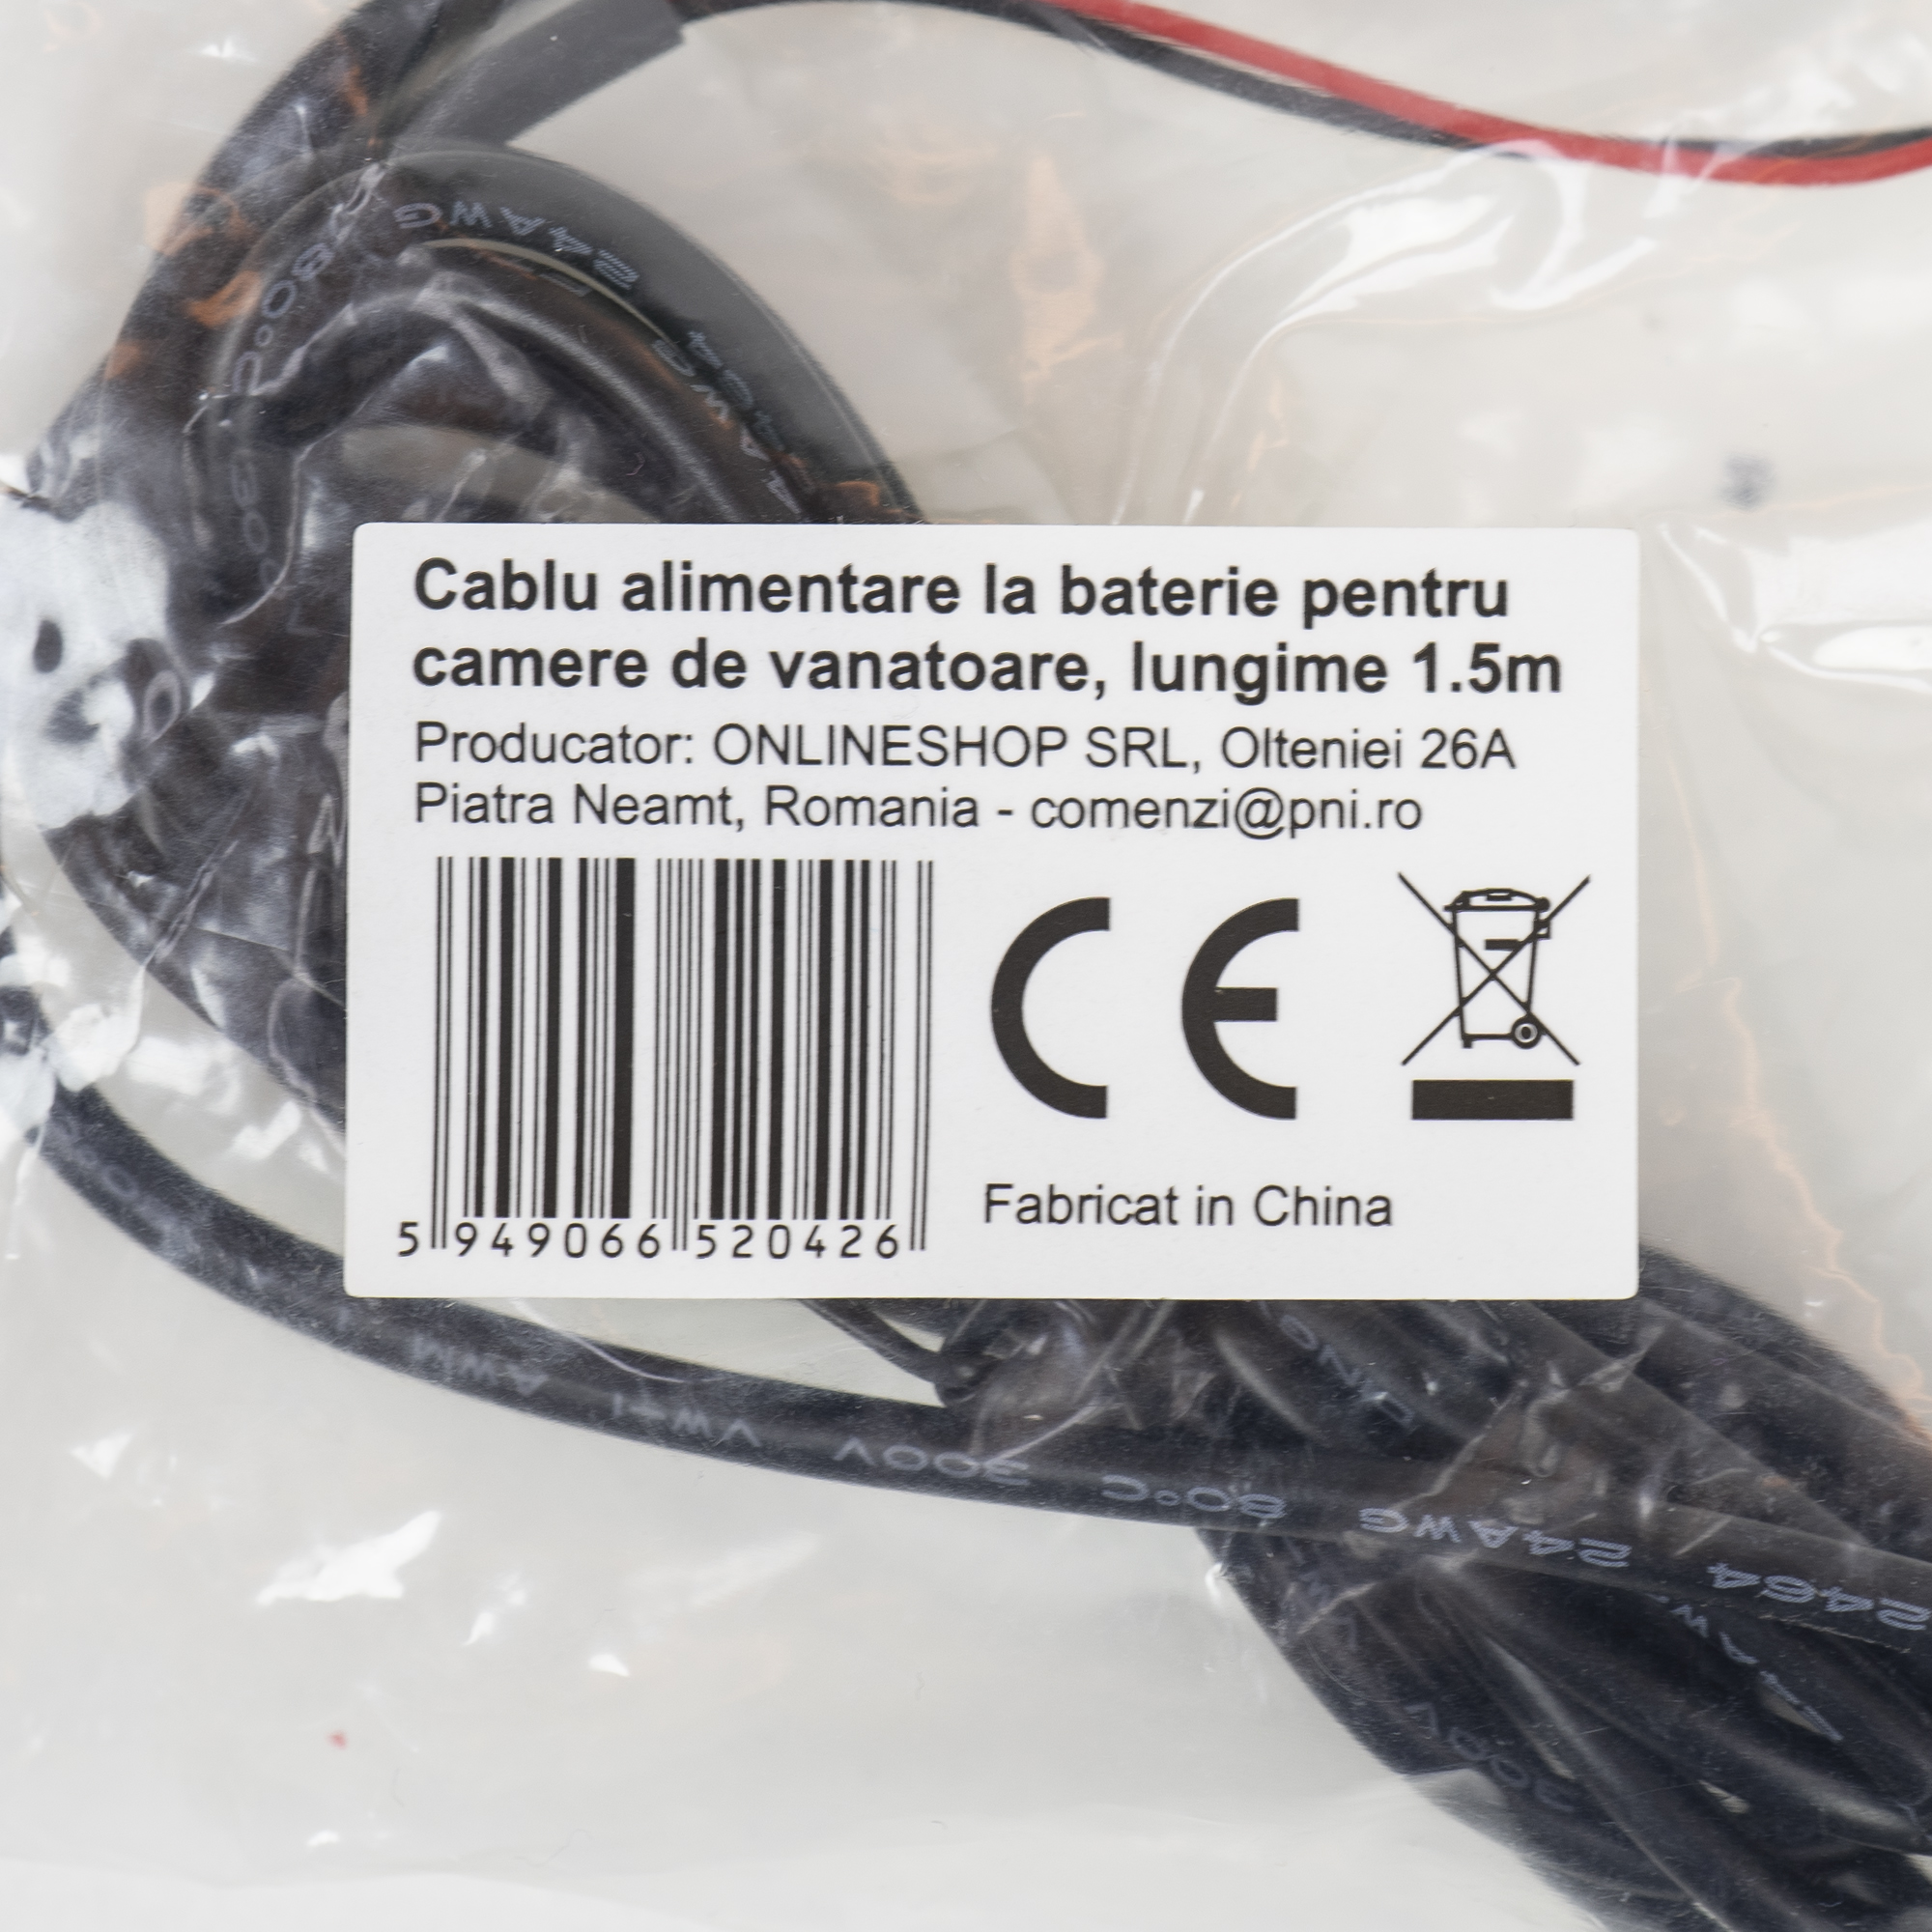 Cablu alimentare la baterie pentru camere de vanatoare, lungime 1.5m PNI 400C, PNI 350C, PNI 280 image2